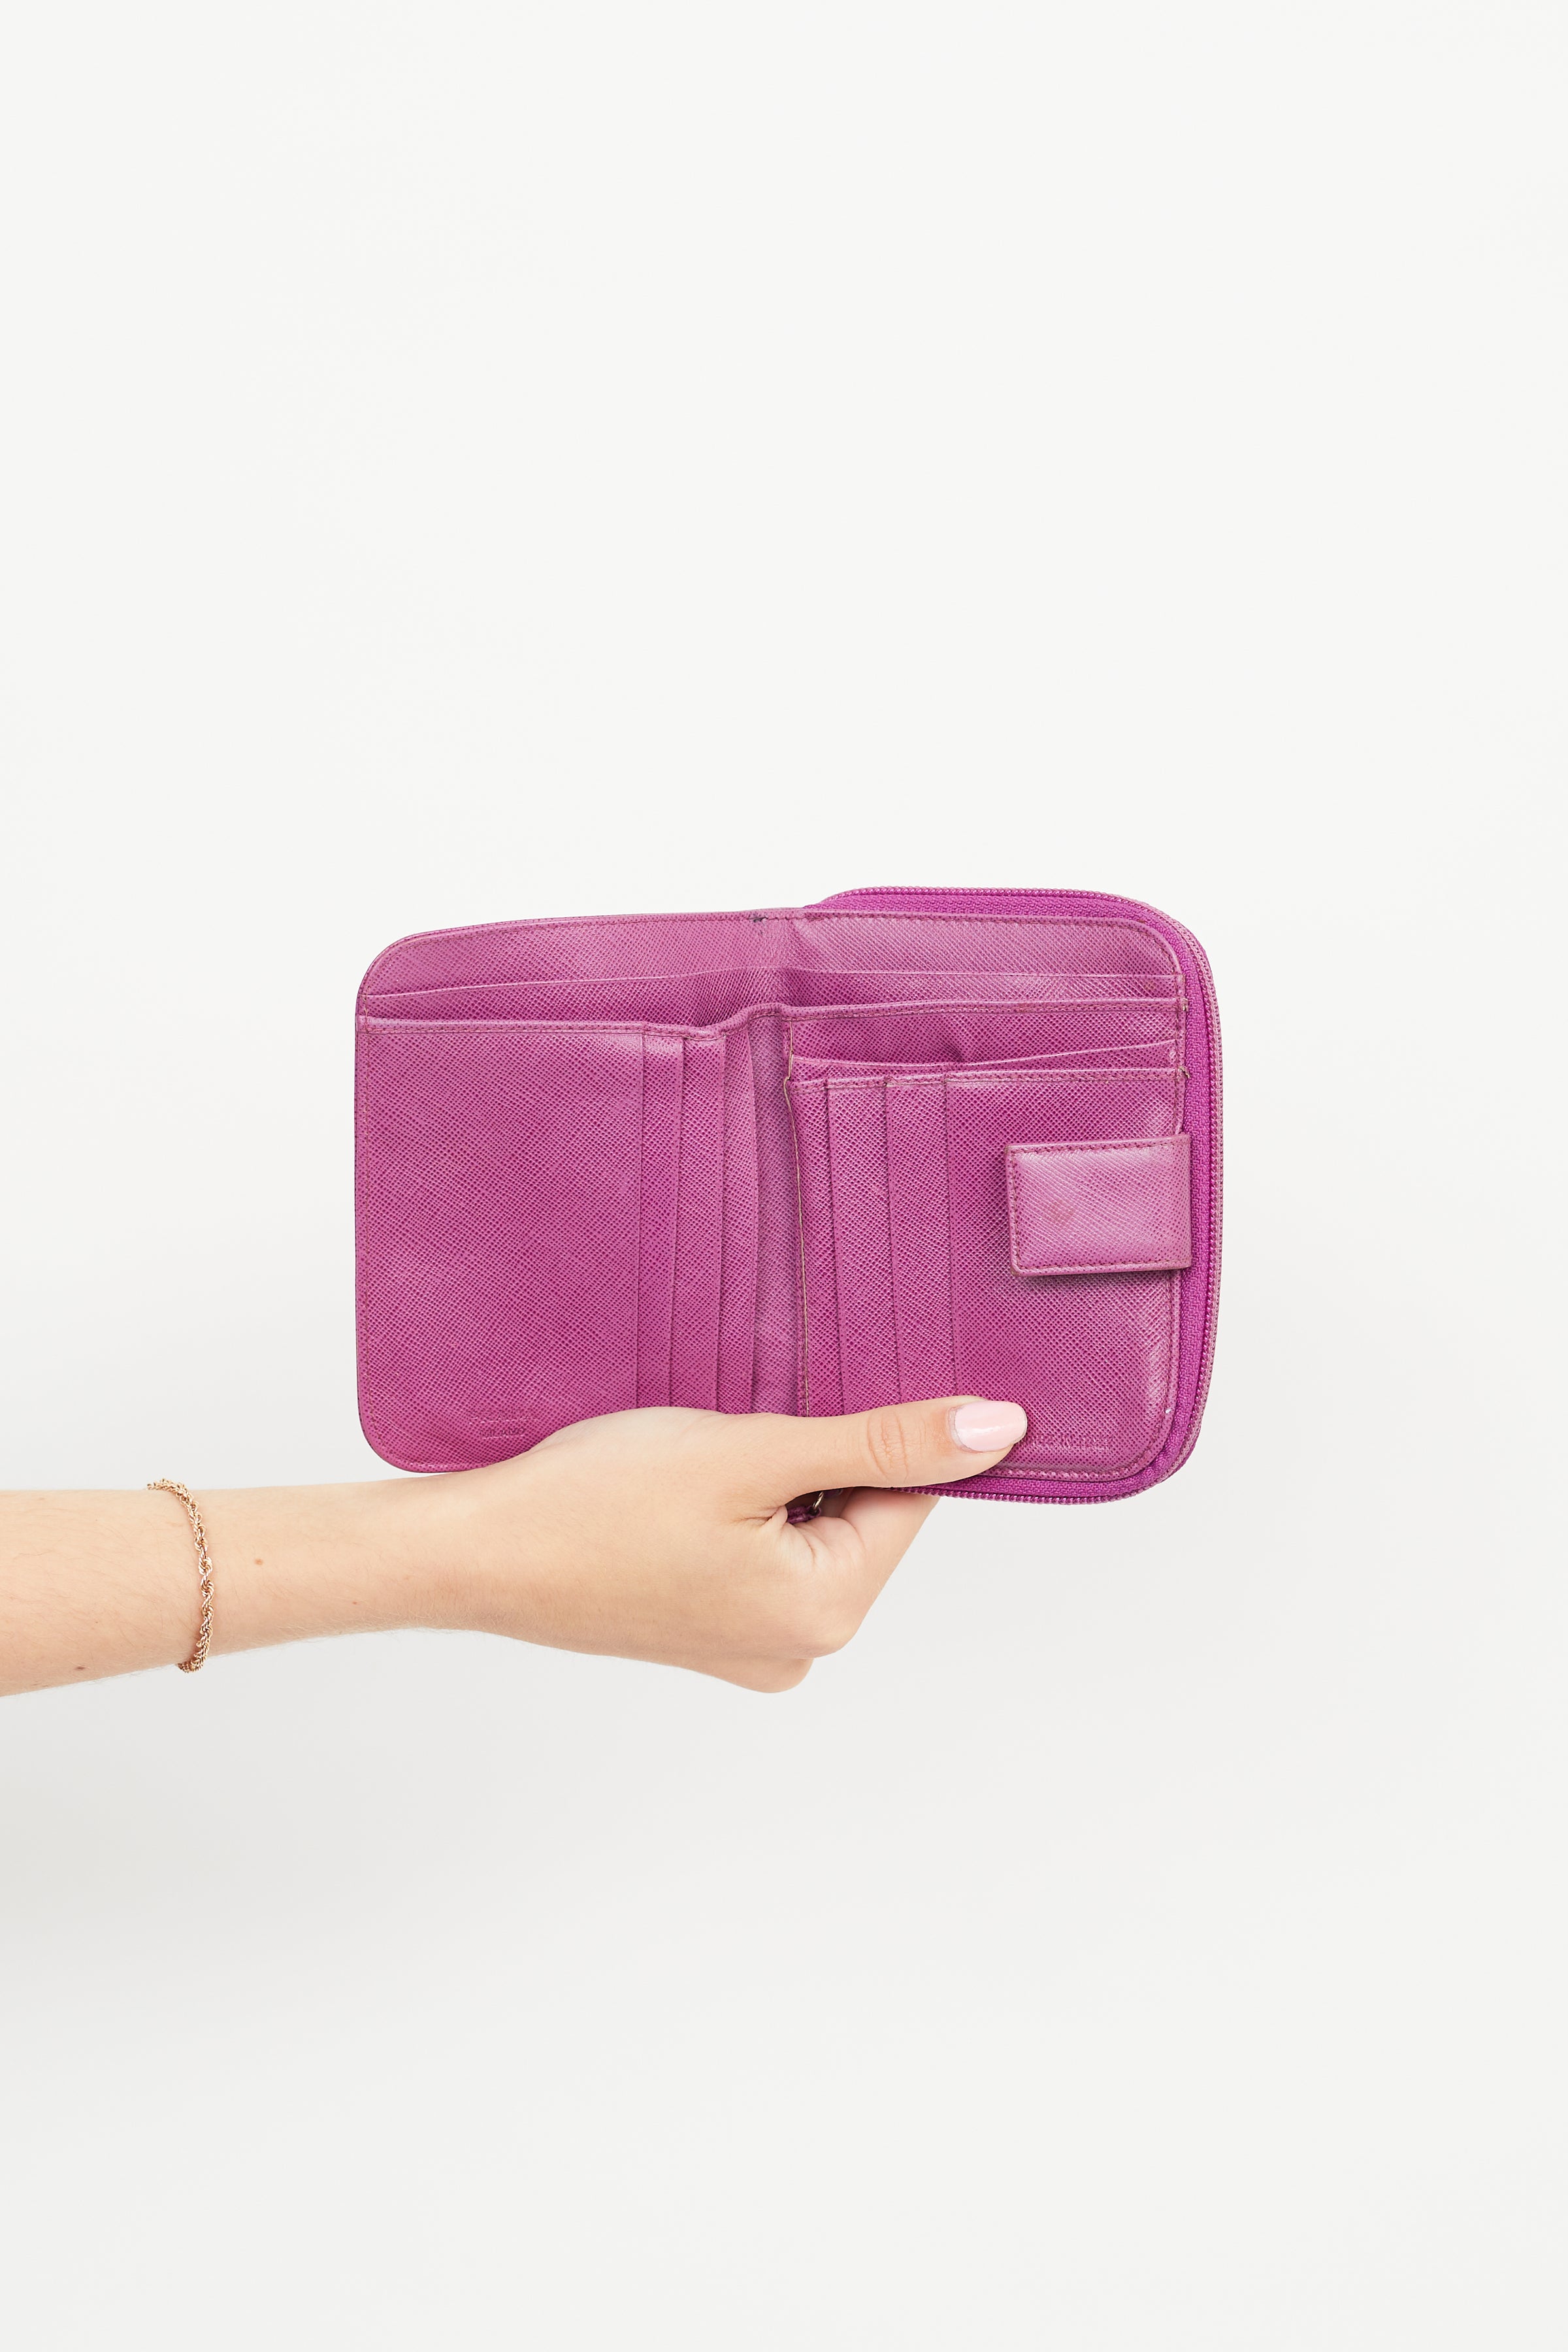 Pastel prada bag | Bags, Handbag, Fun bags